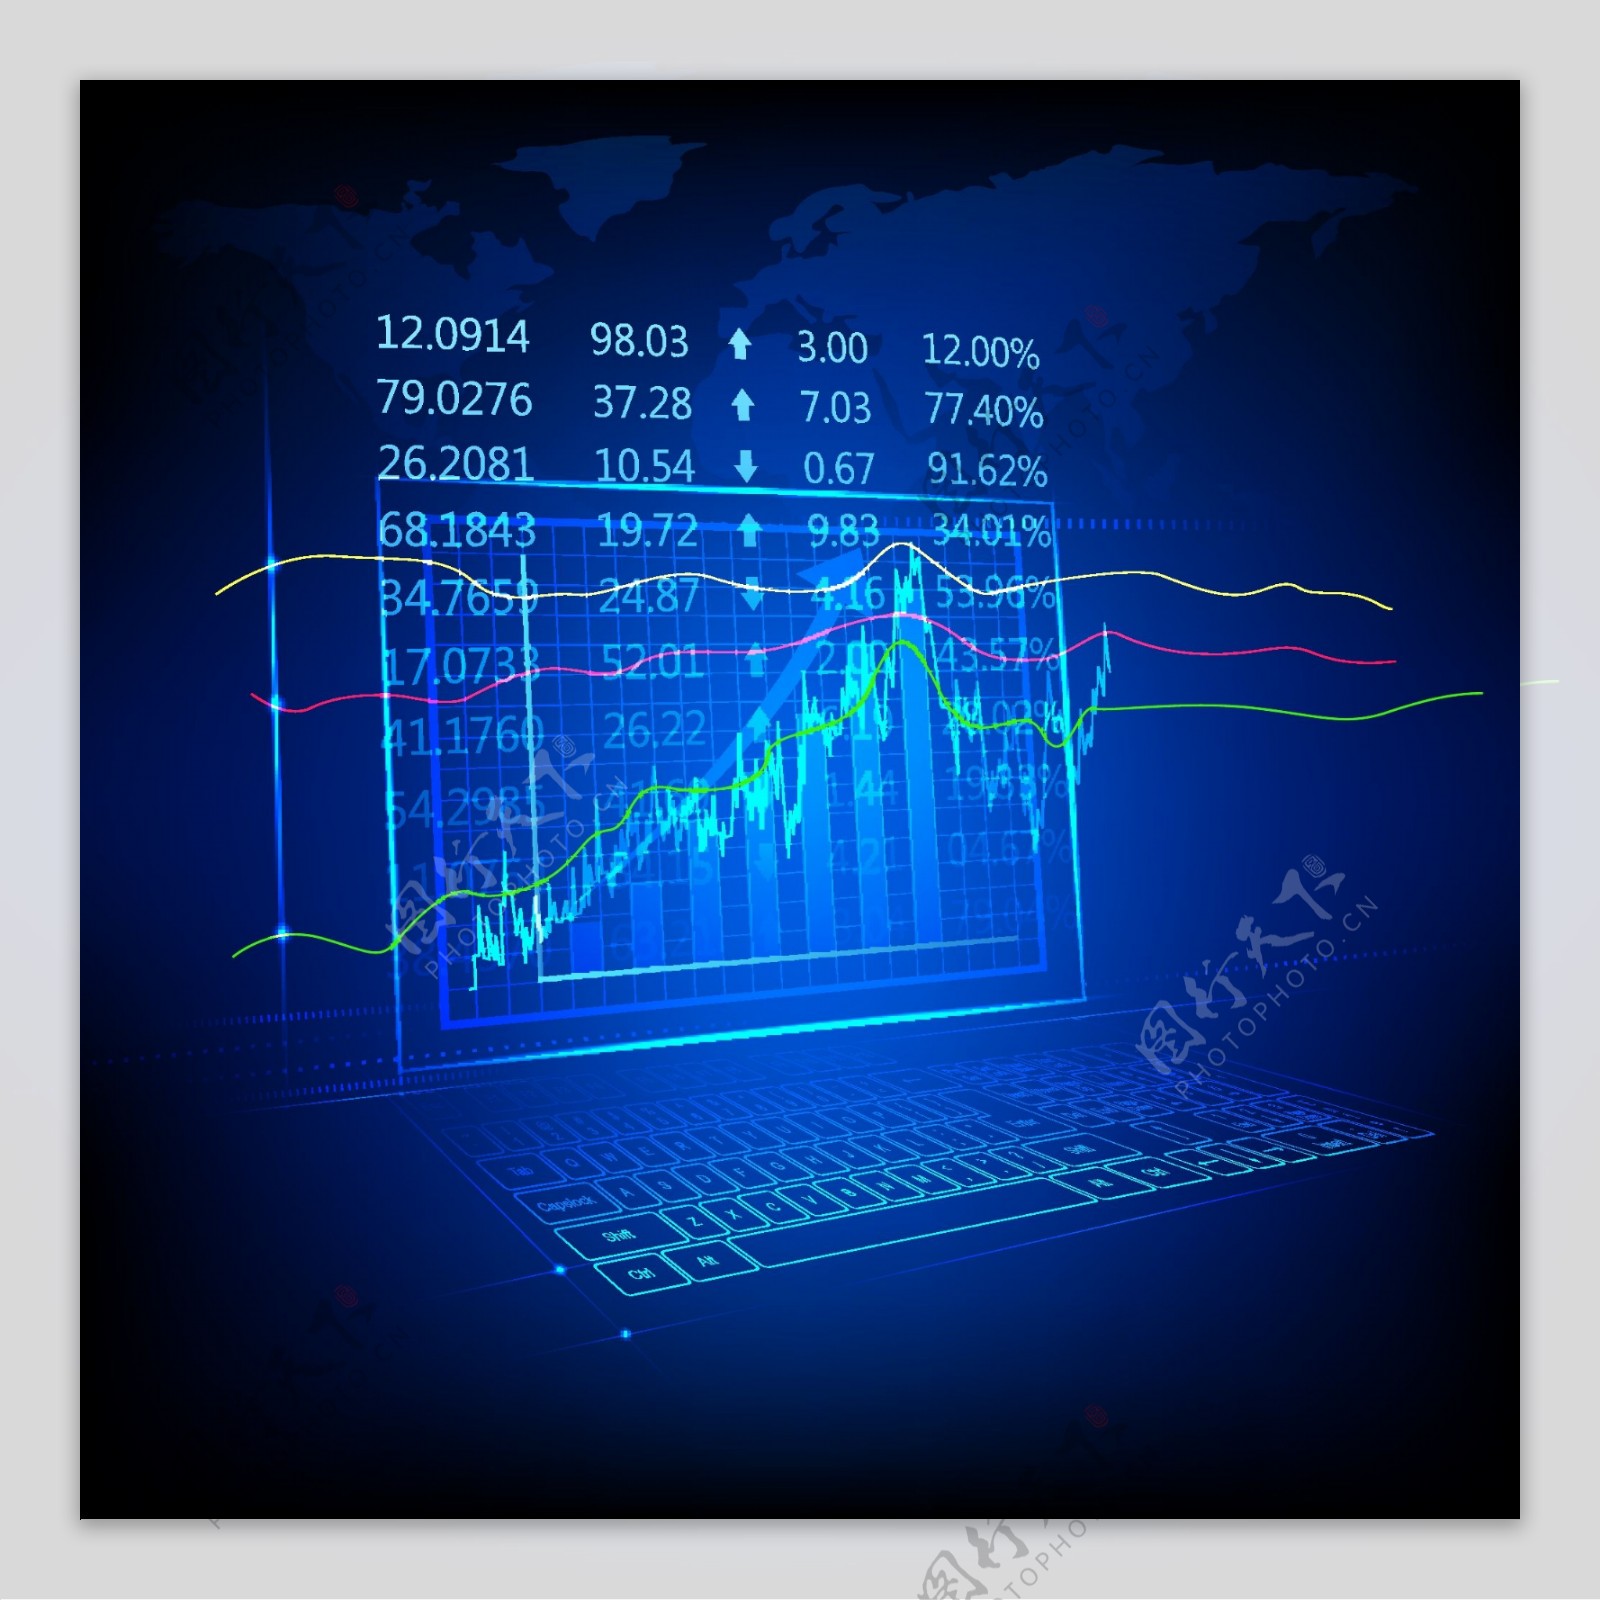 蓝色技术荧光财务图表背景